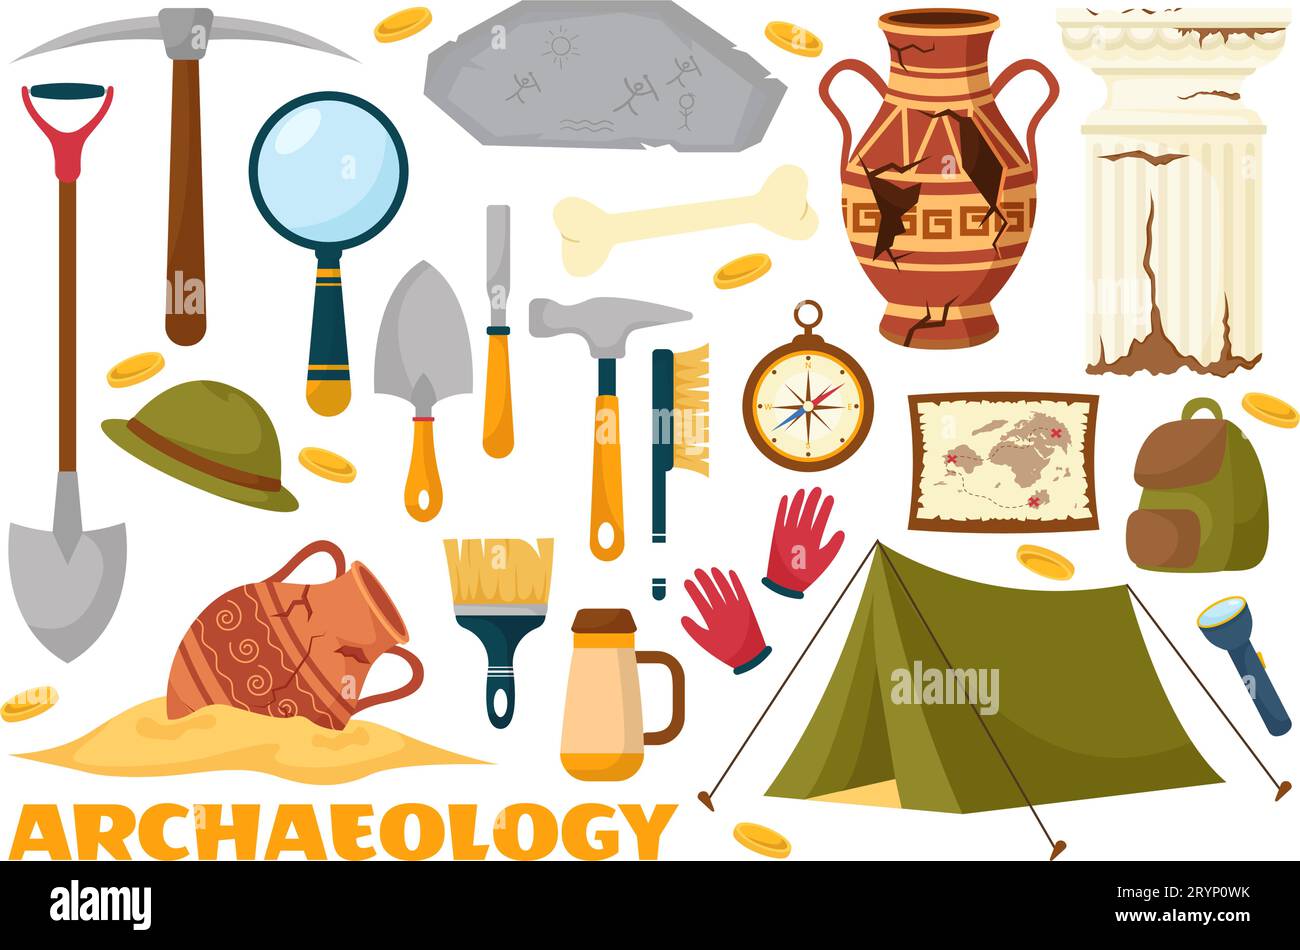 Archéologie Illustration vectorielle avec excavation archéologique des ruines antiques, des artefacts et des dinosaures fossiles dans les modèles dessinés à la main de dessin animé plat Illustration de Vecteur